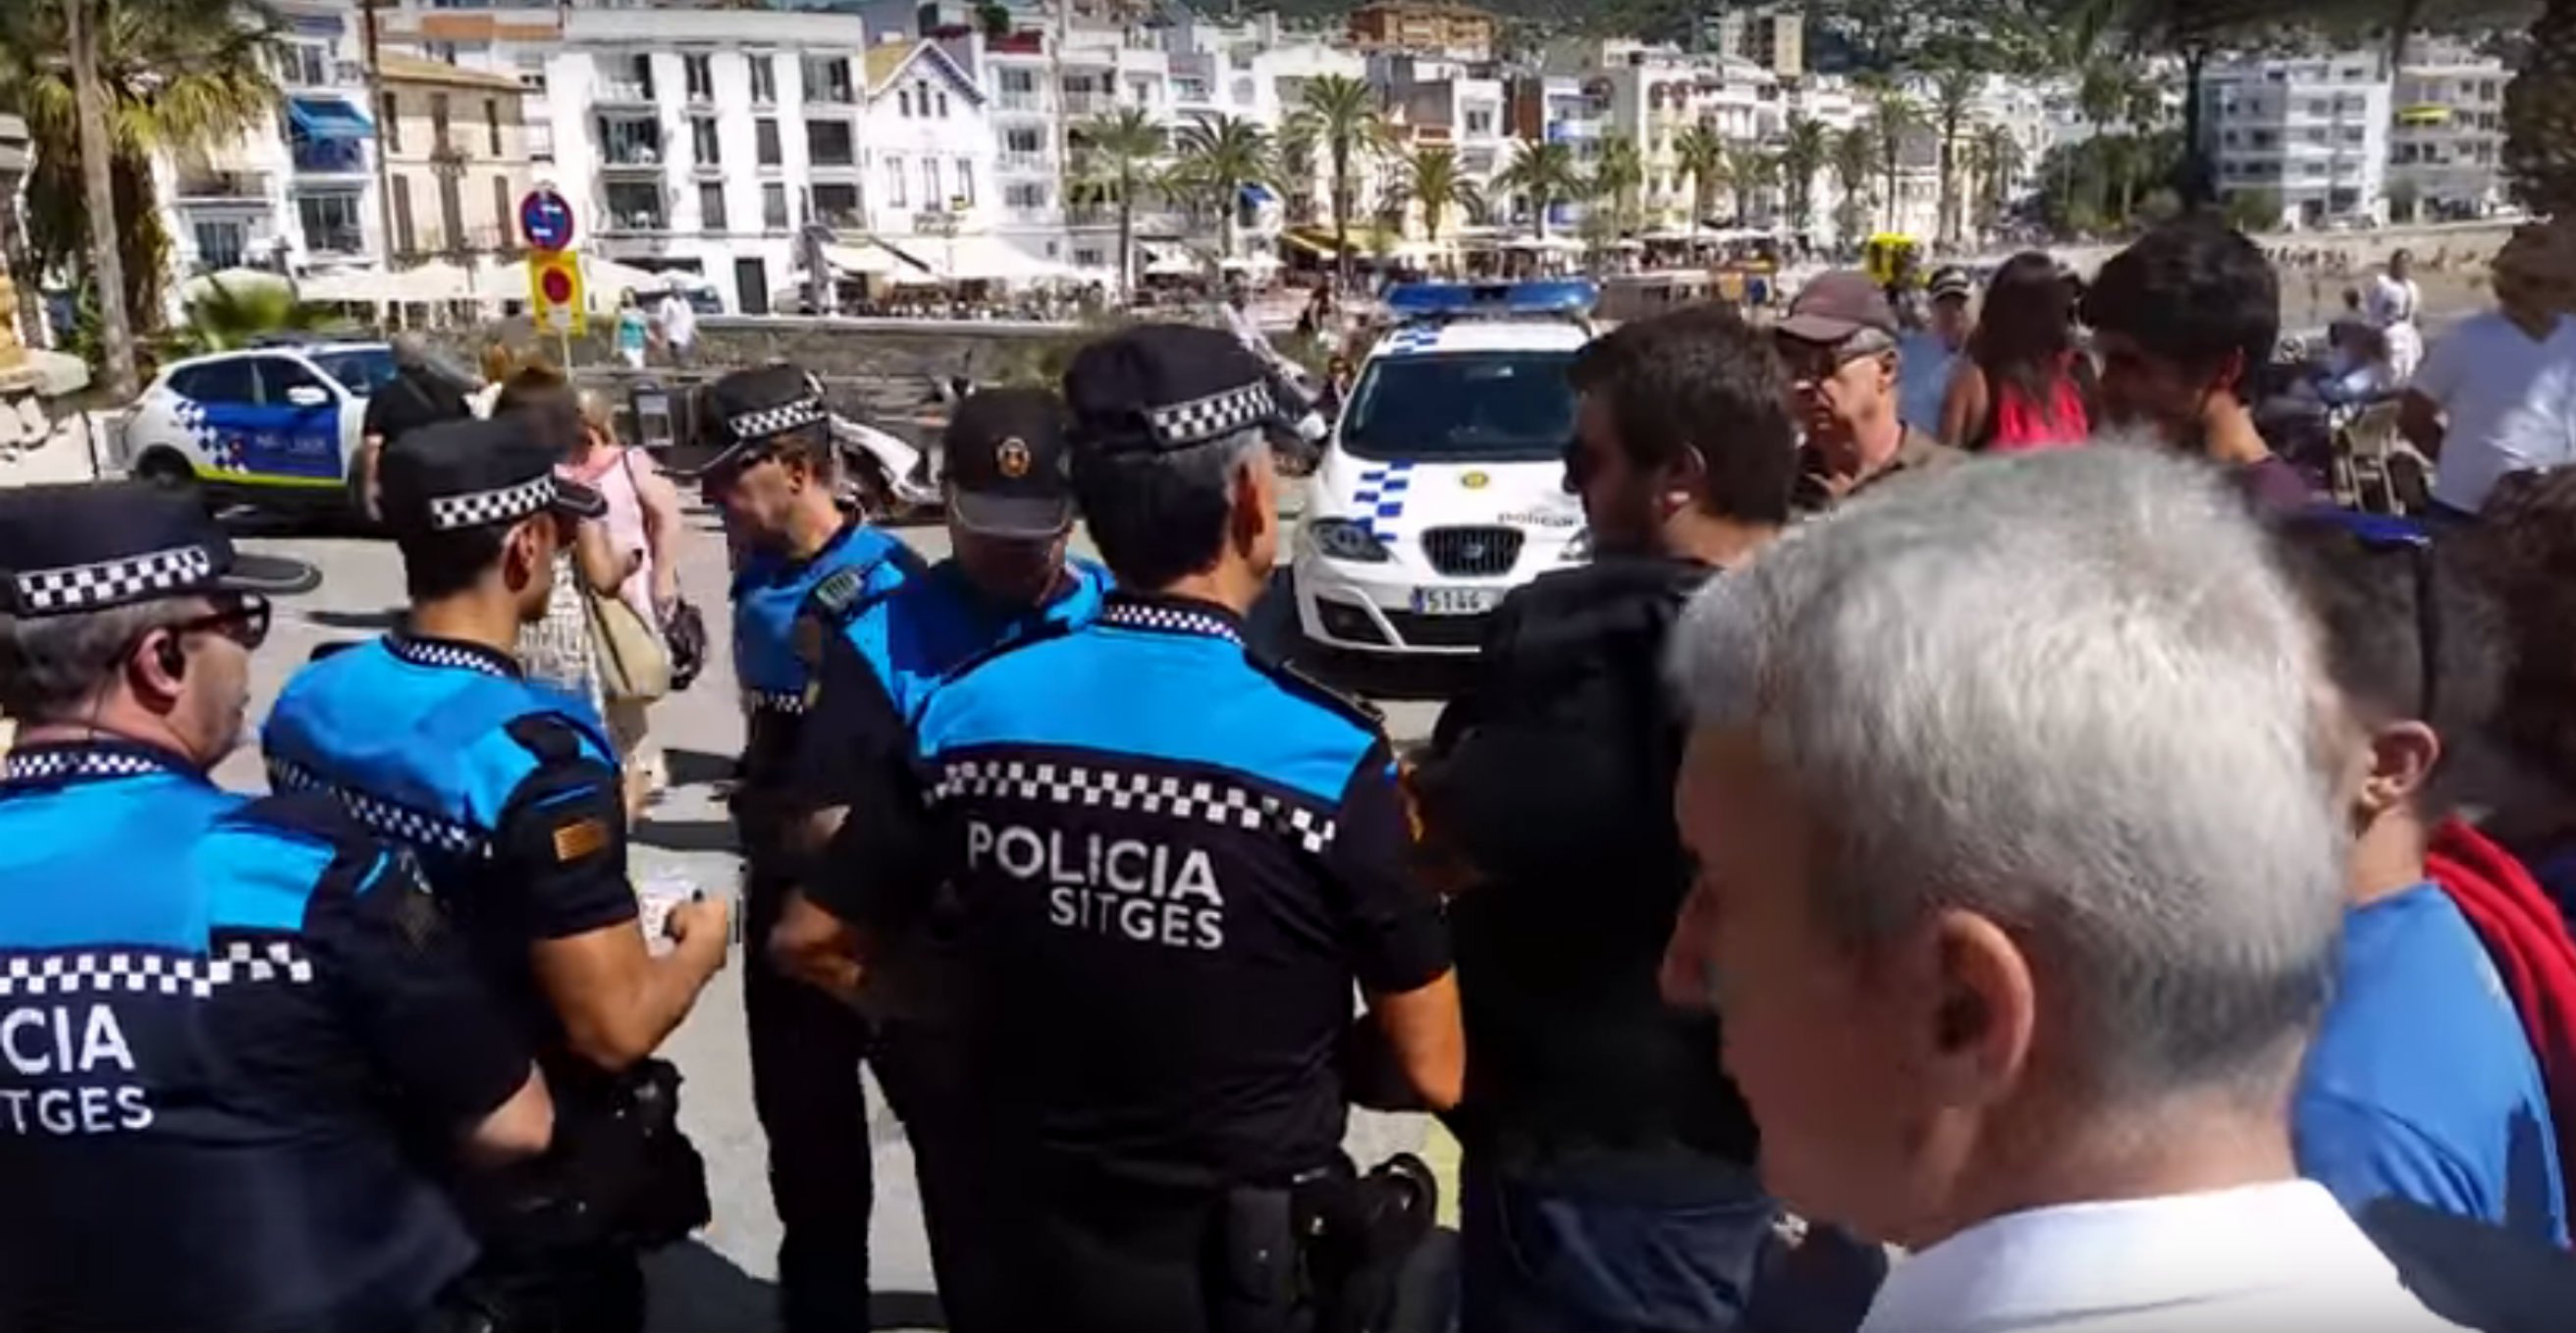 La policia local de Sitges irromp en un míting pel 'sí' i fotografia els assistents